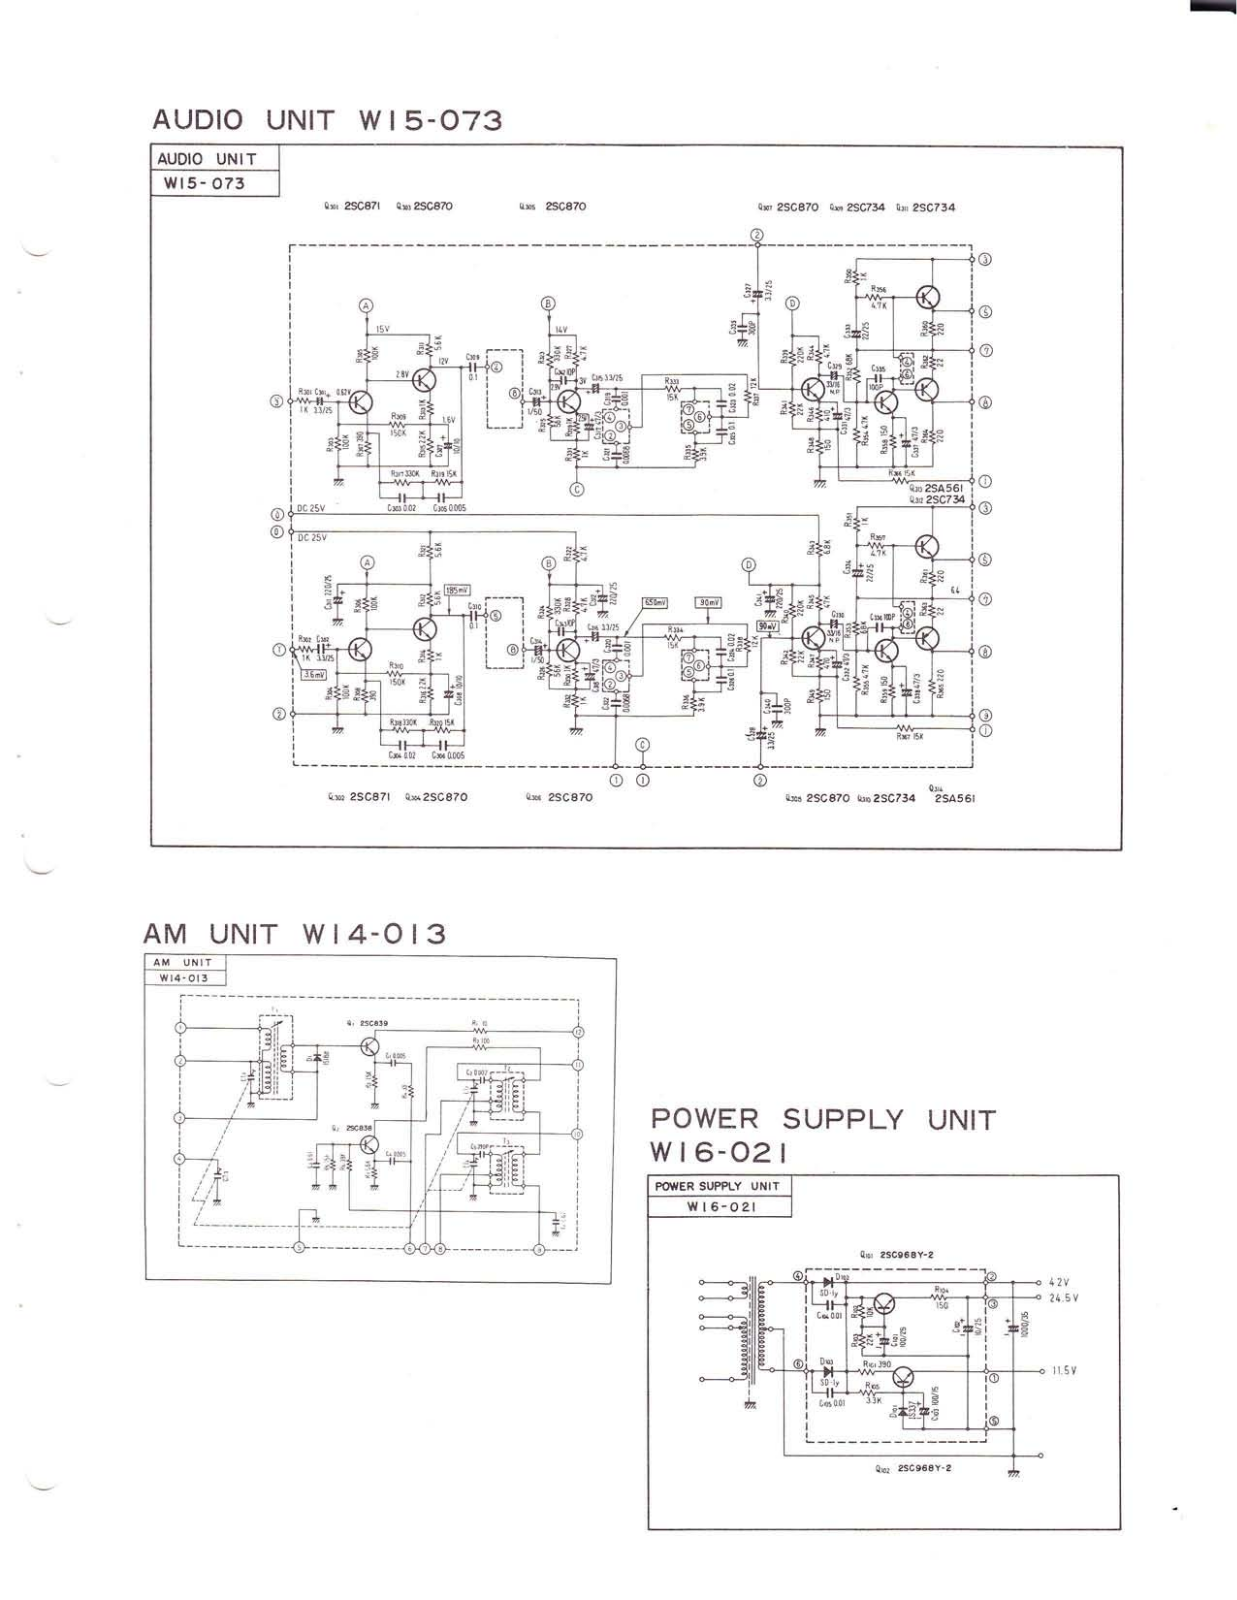 Pioneer W15-073, W14-013, W16-021 Schematic